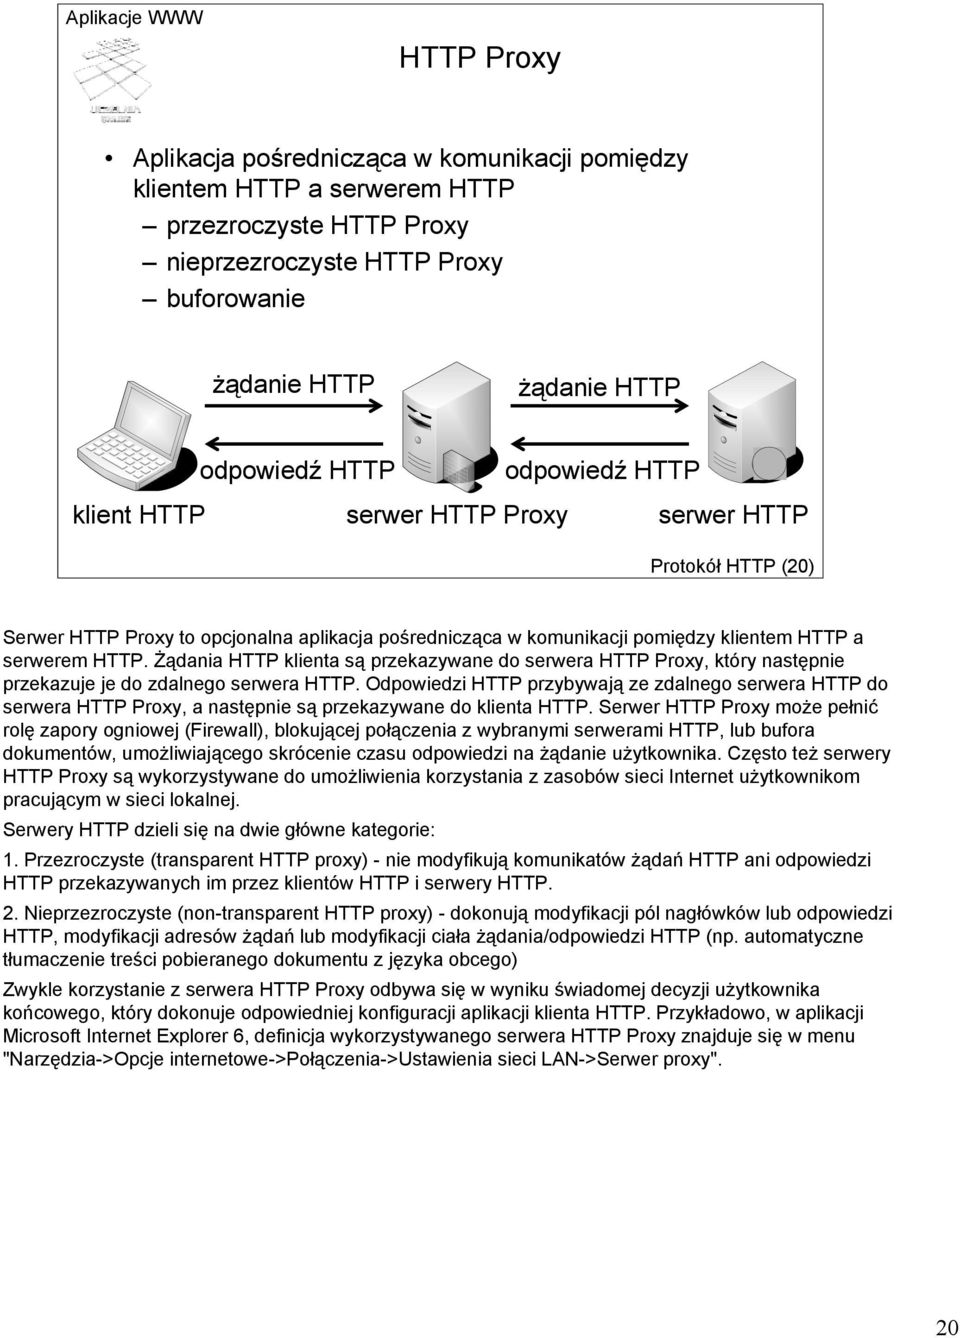 Żądania HTTP klienta są przekazywane do serwera HTTP Proxy, który następnie przekazuje je do zdalnego serwera HTTP.